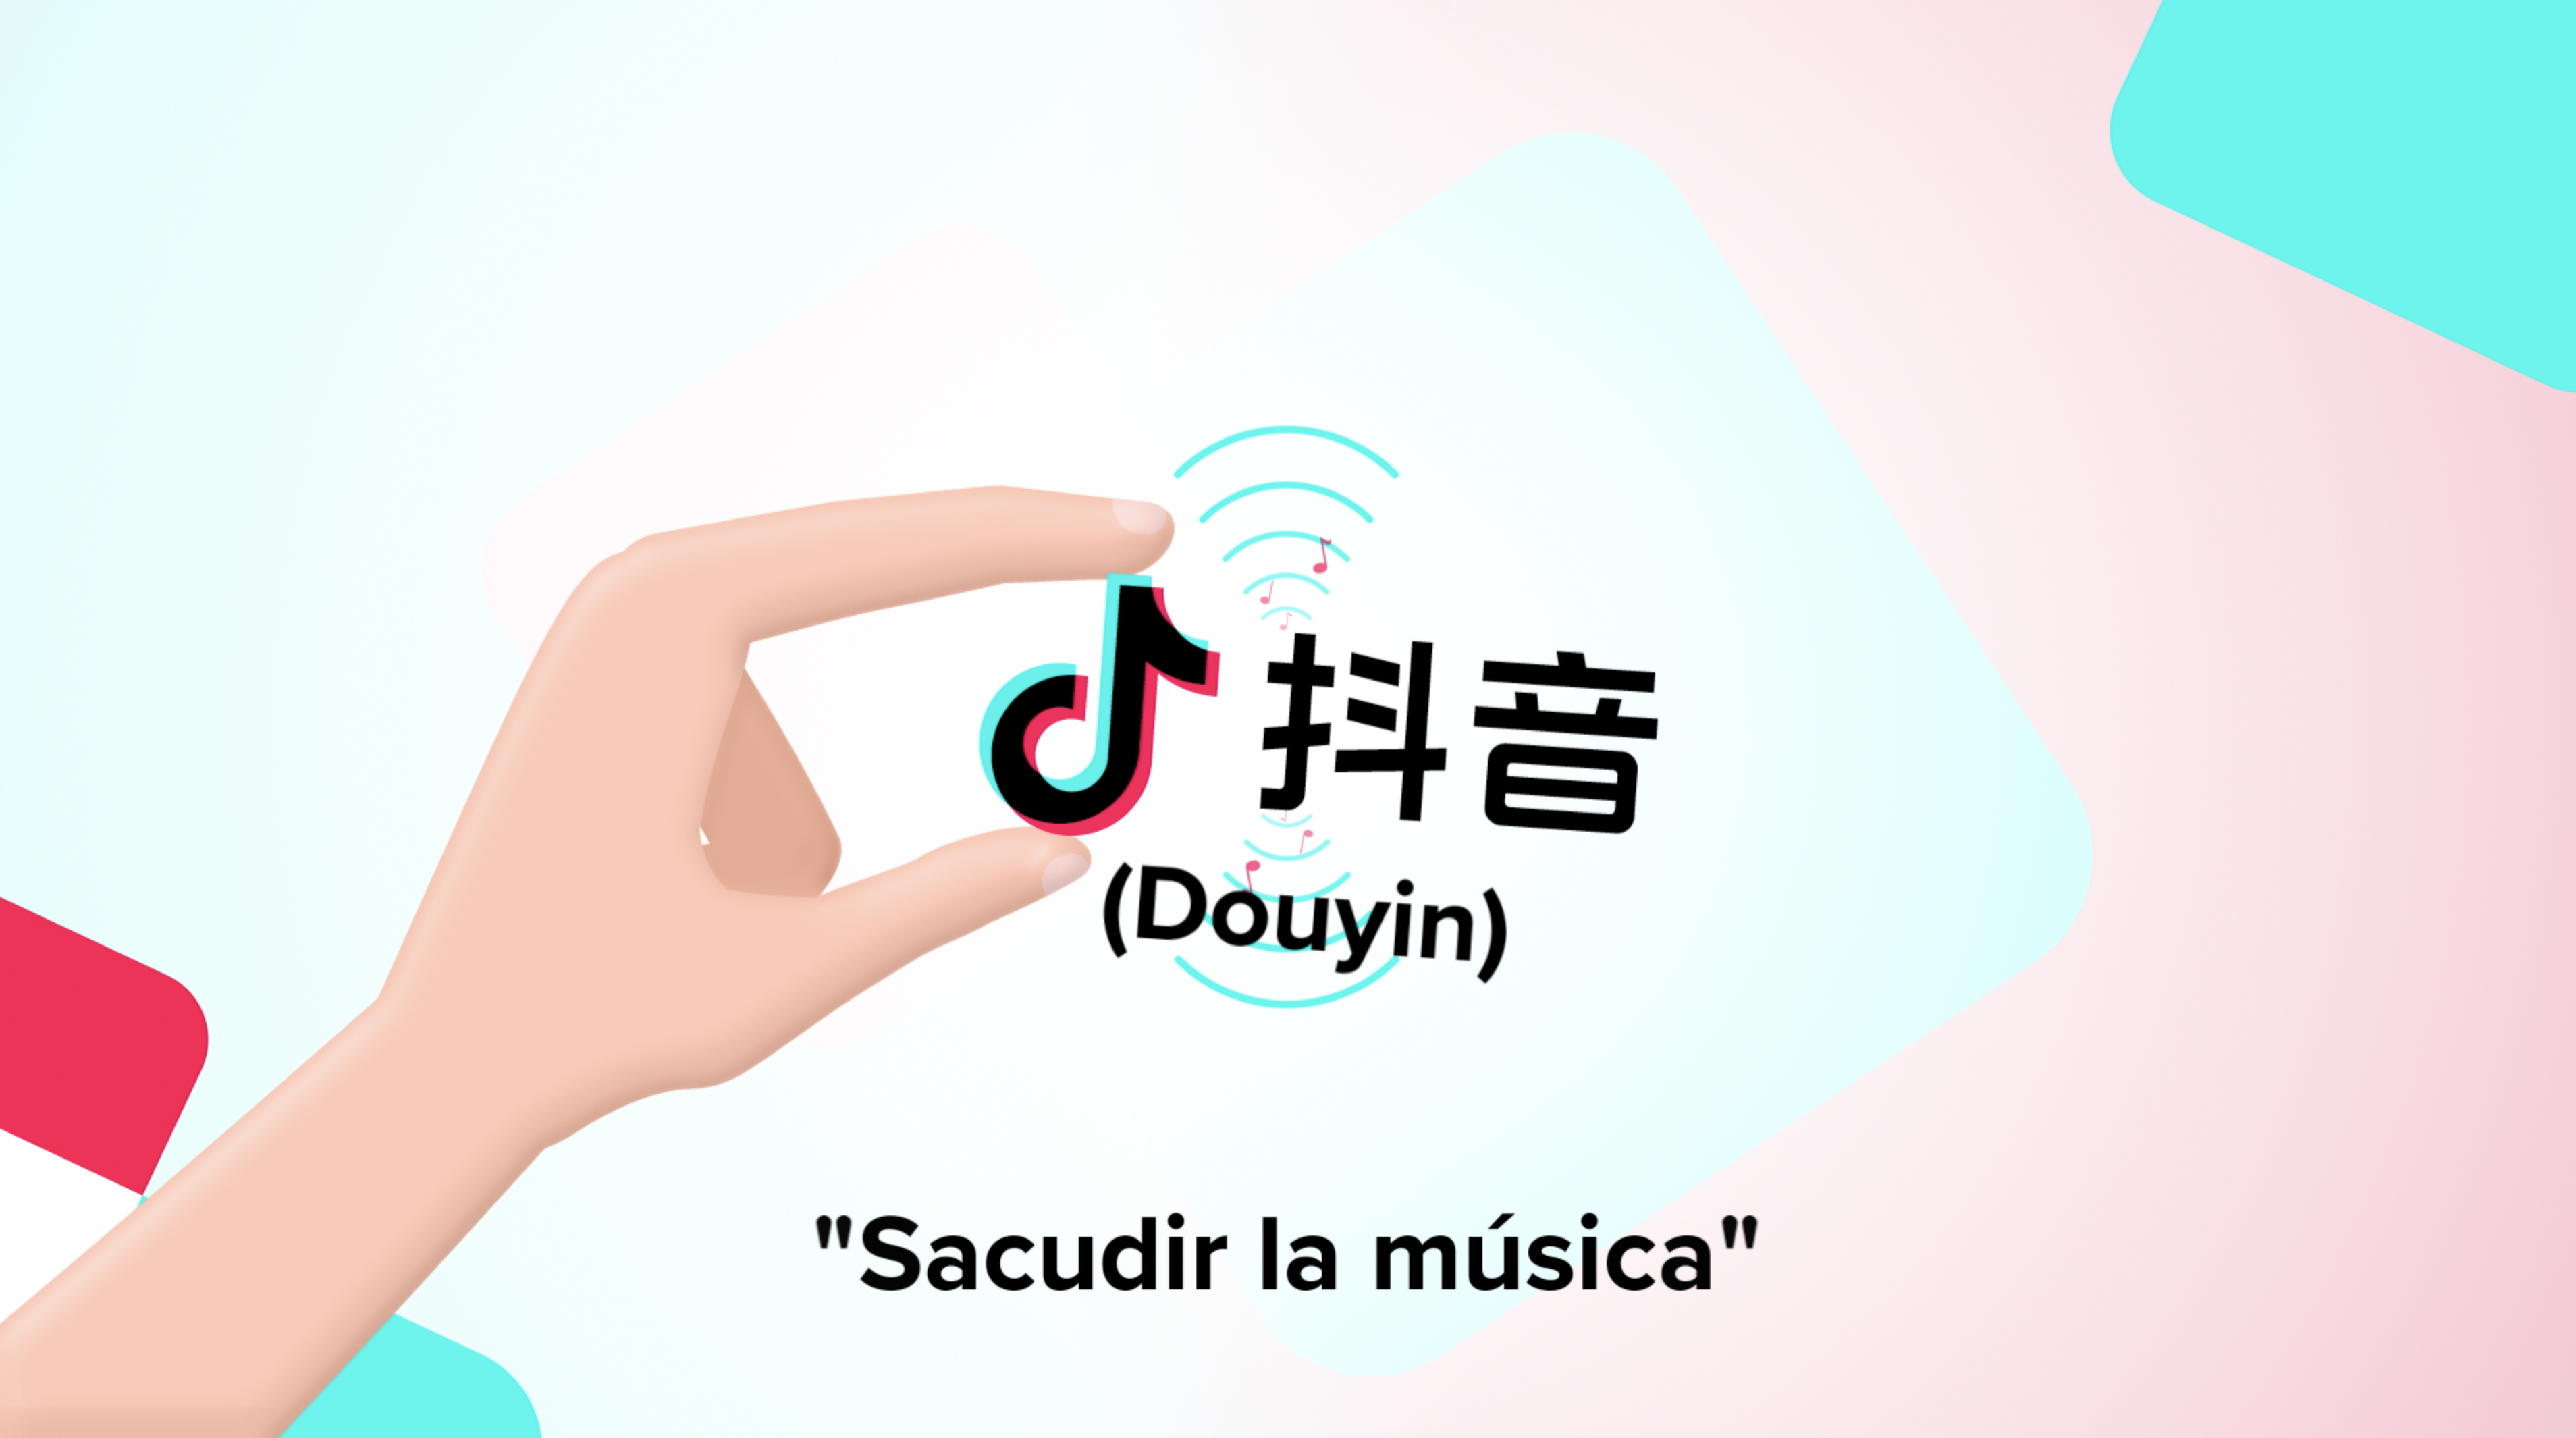 Su primera versión se llamó Douyin, que en español significa "sacudir la música".